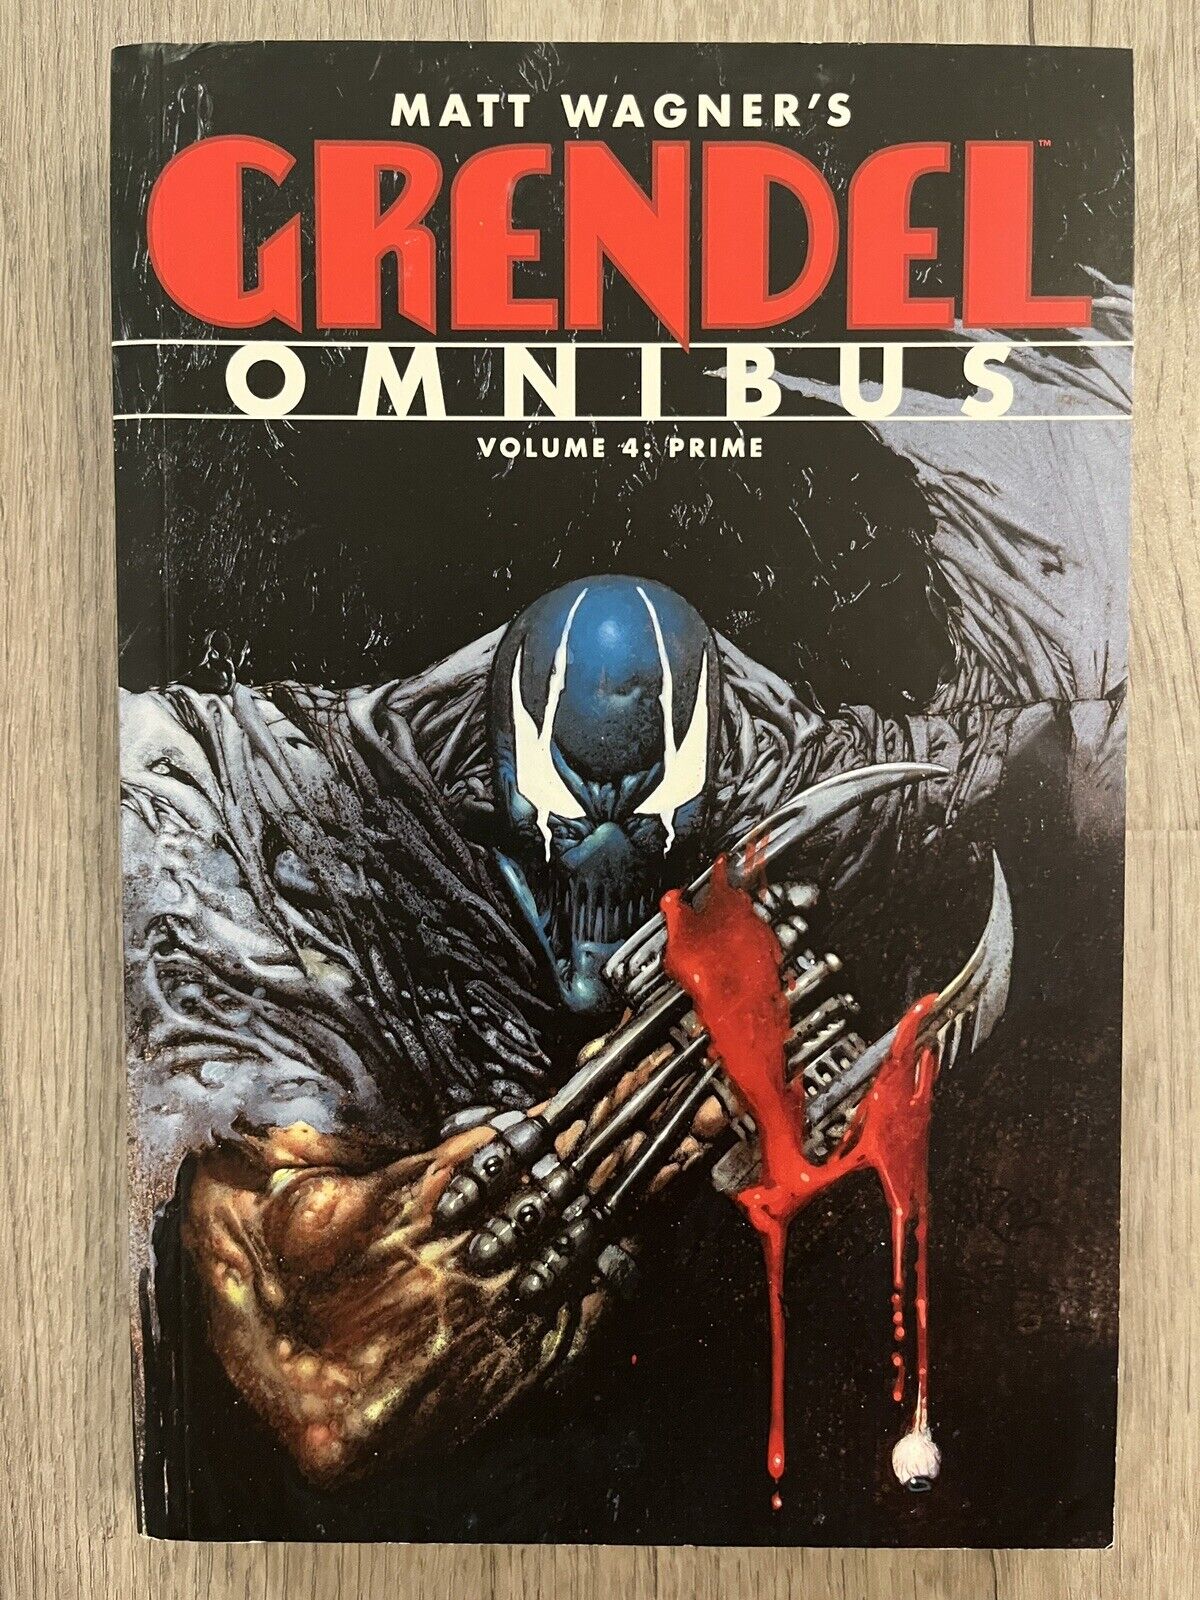 Grendel Omnibus Volume 4: Prime by Matt Wagner (2013, Trade Paperback)